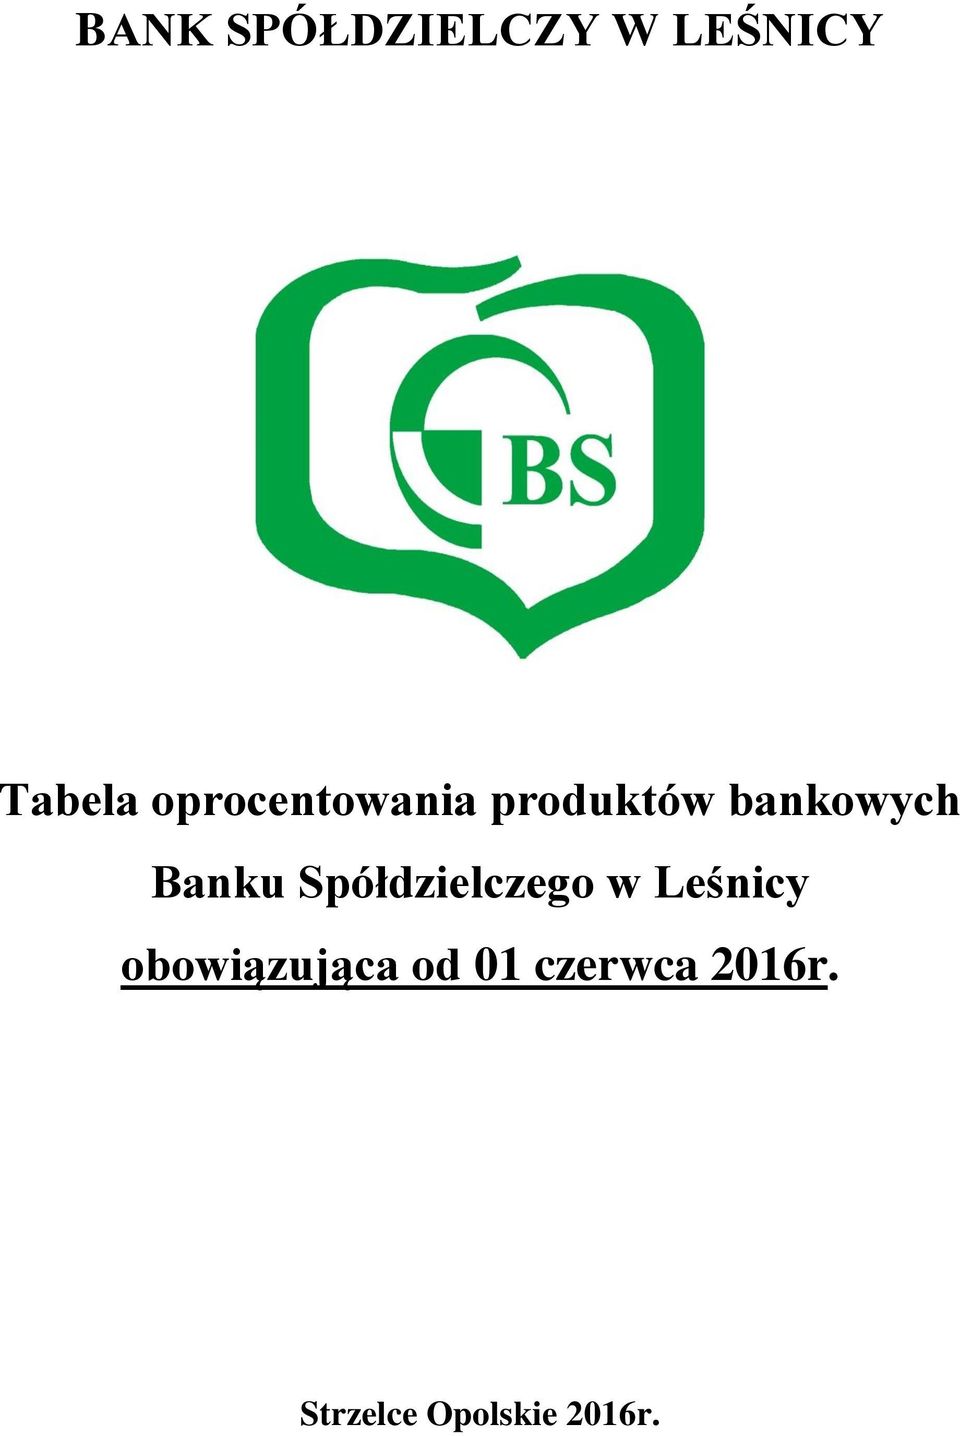 Banku Spółdzielczego w Leśnicy